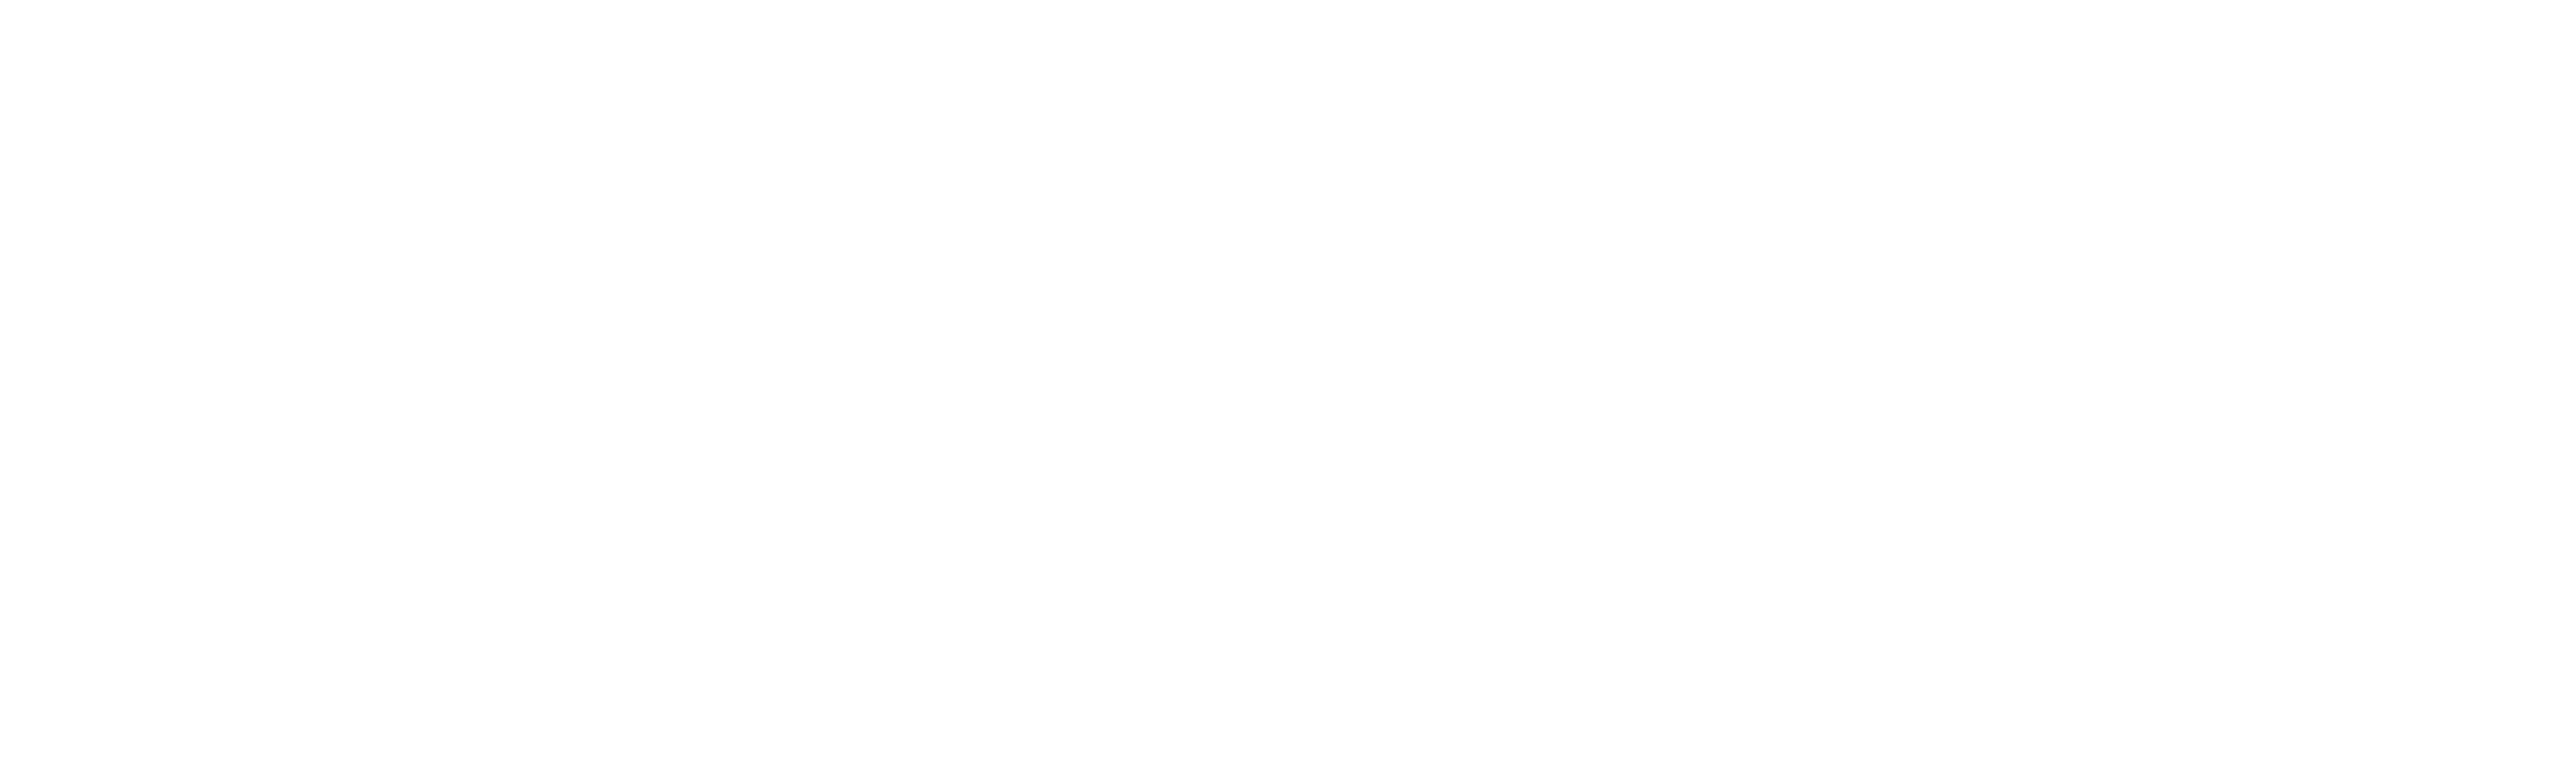 White Rose Medical Centre Logo